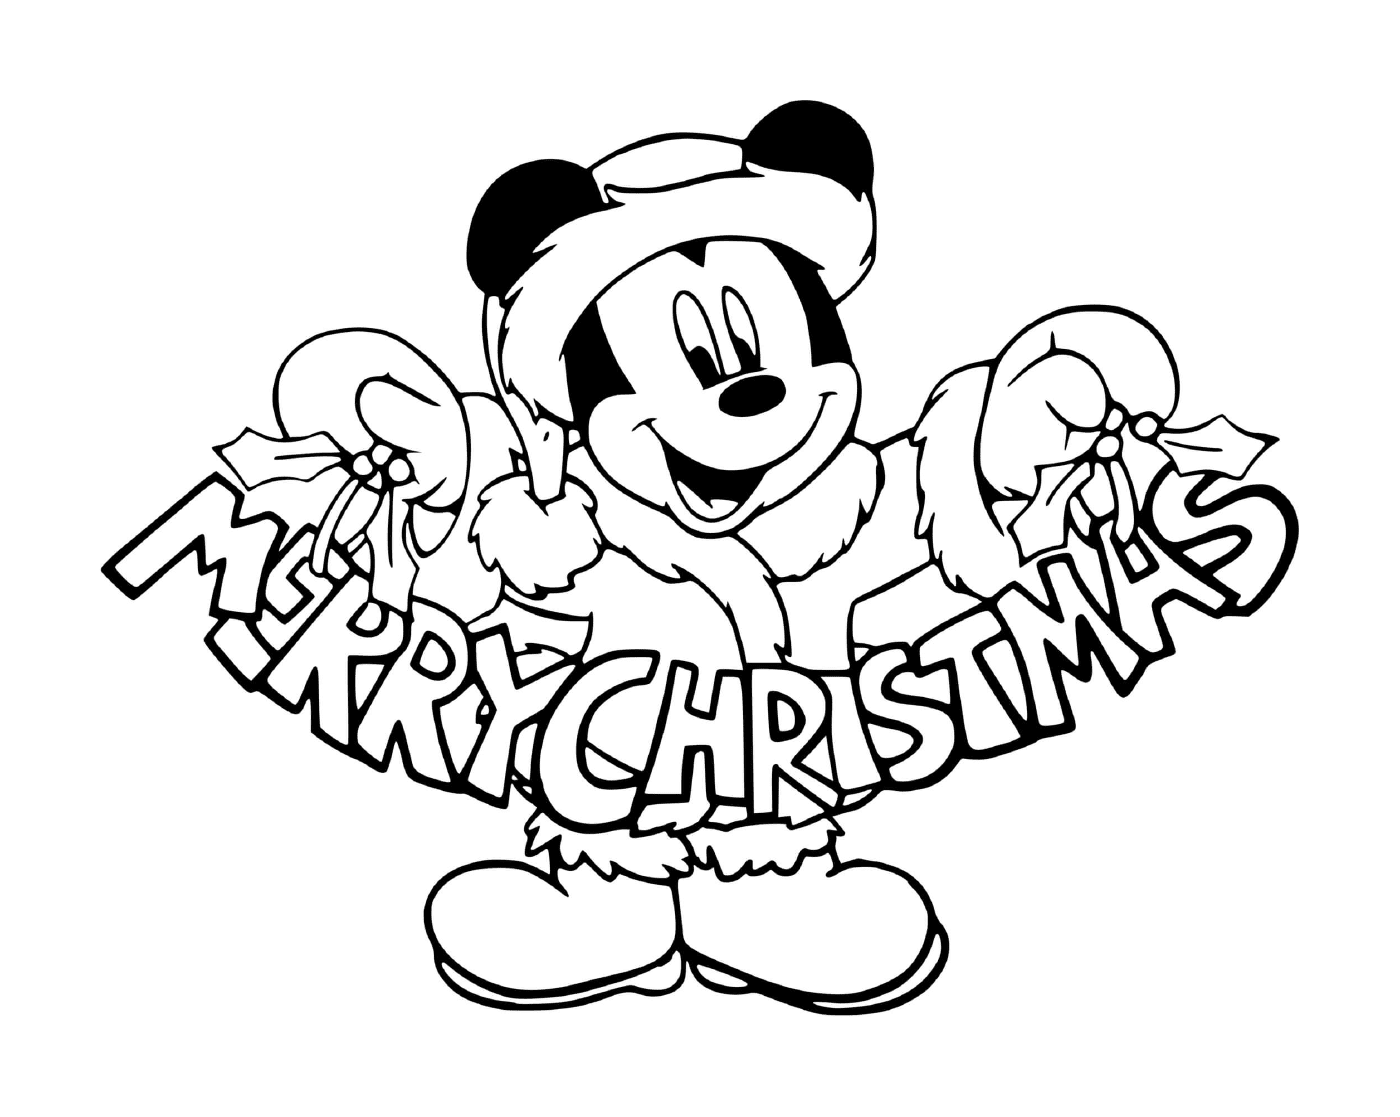  Mickey mit einem Happy Christmas Zeichen 